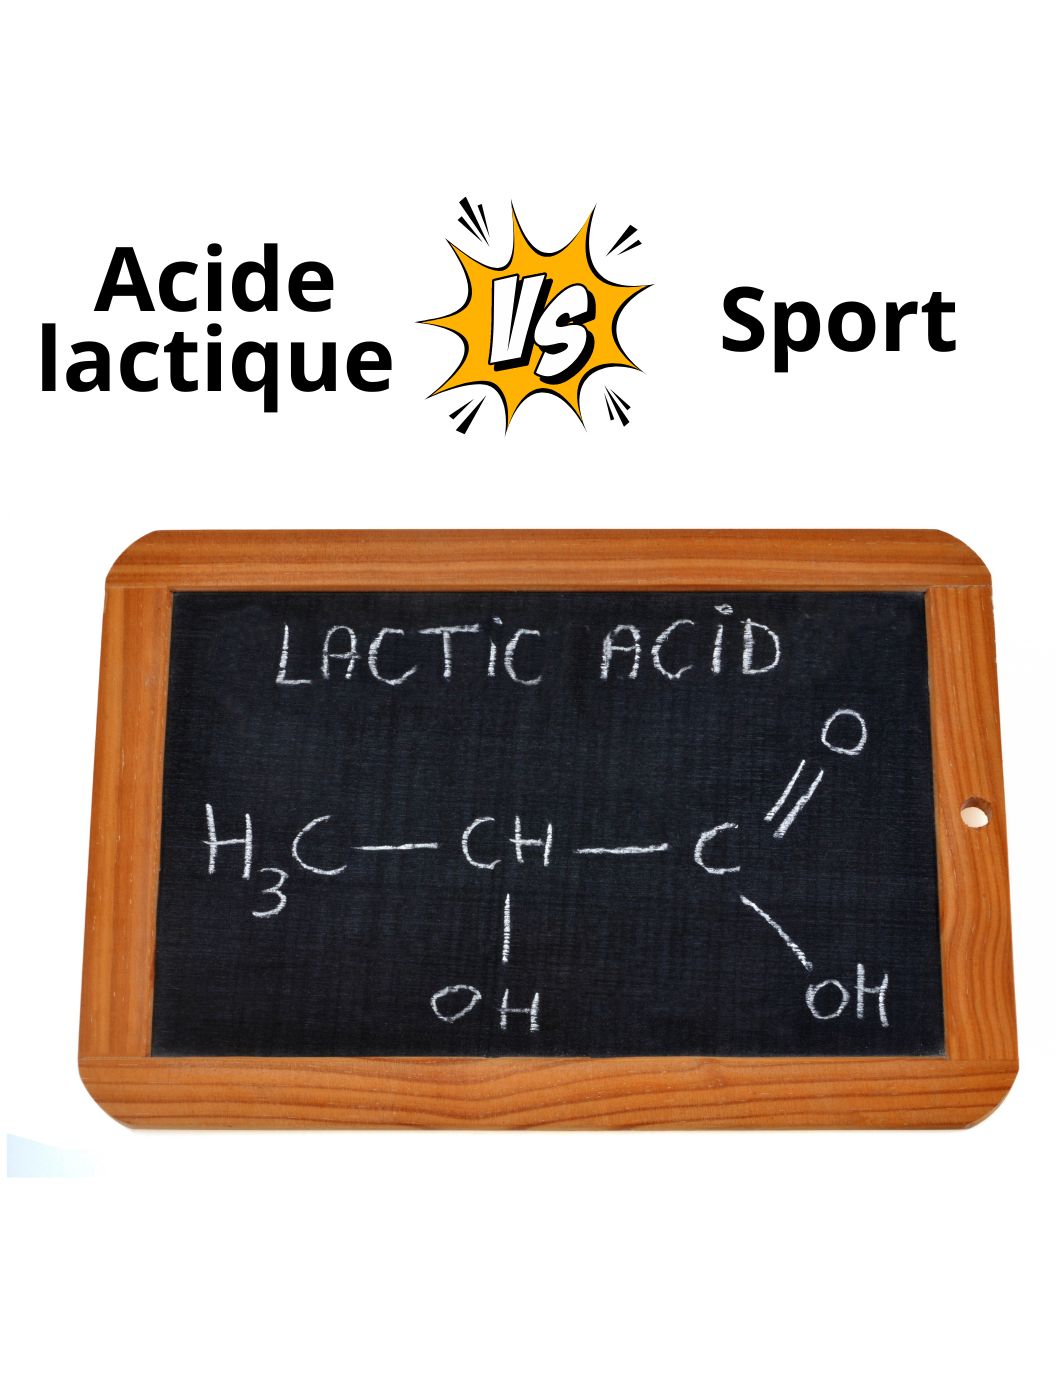 Acide lactique et sport